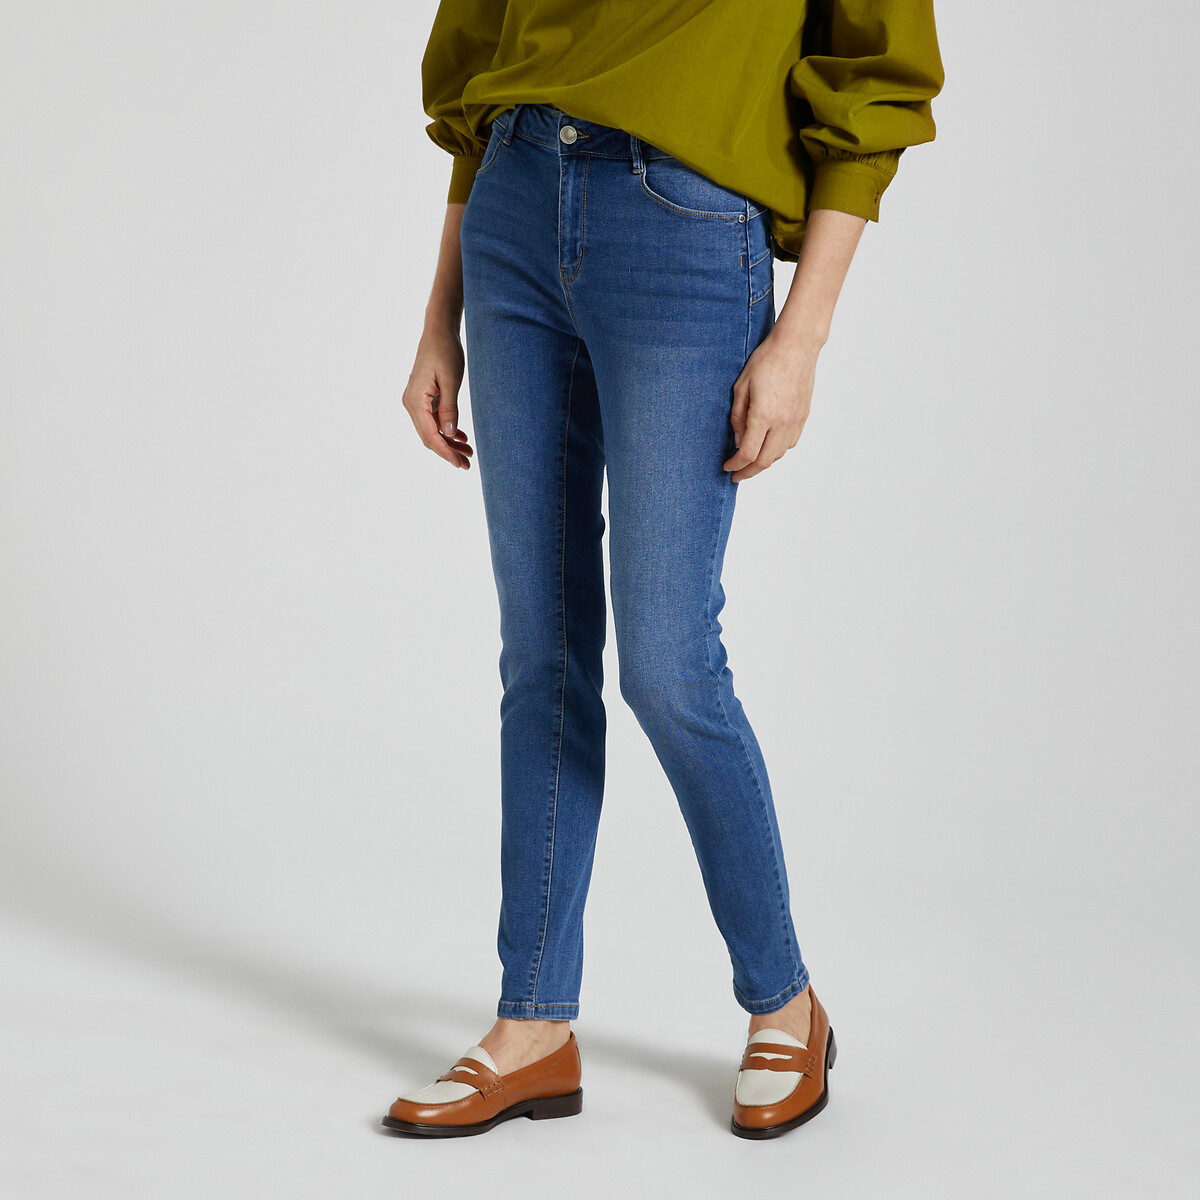 Jeans Skinny, standaard taille in de sale-morgan 1